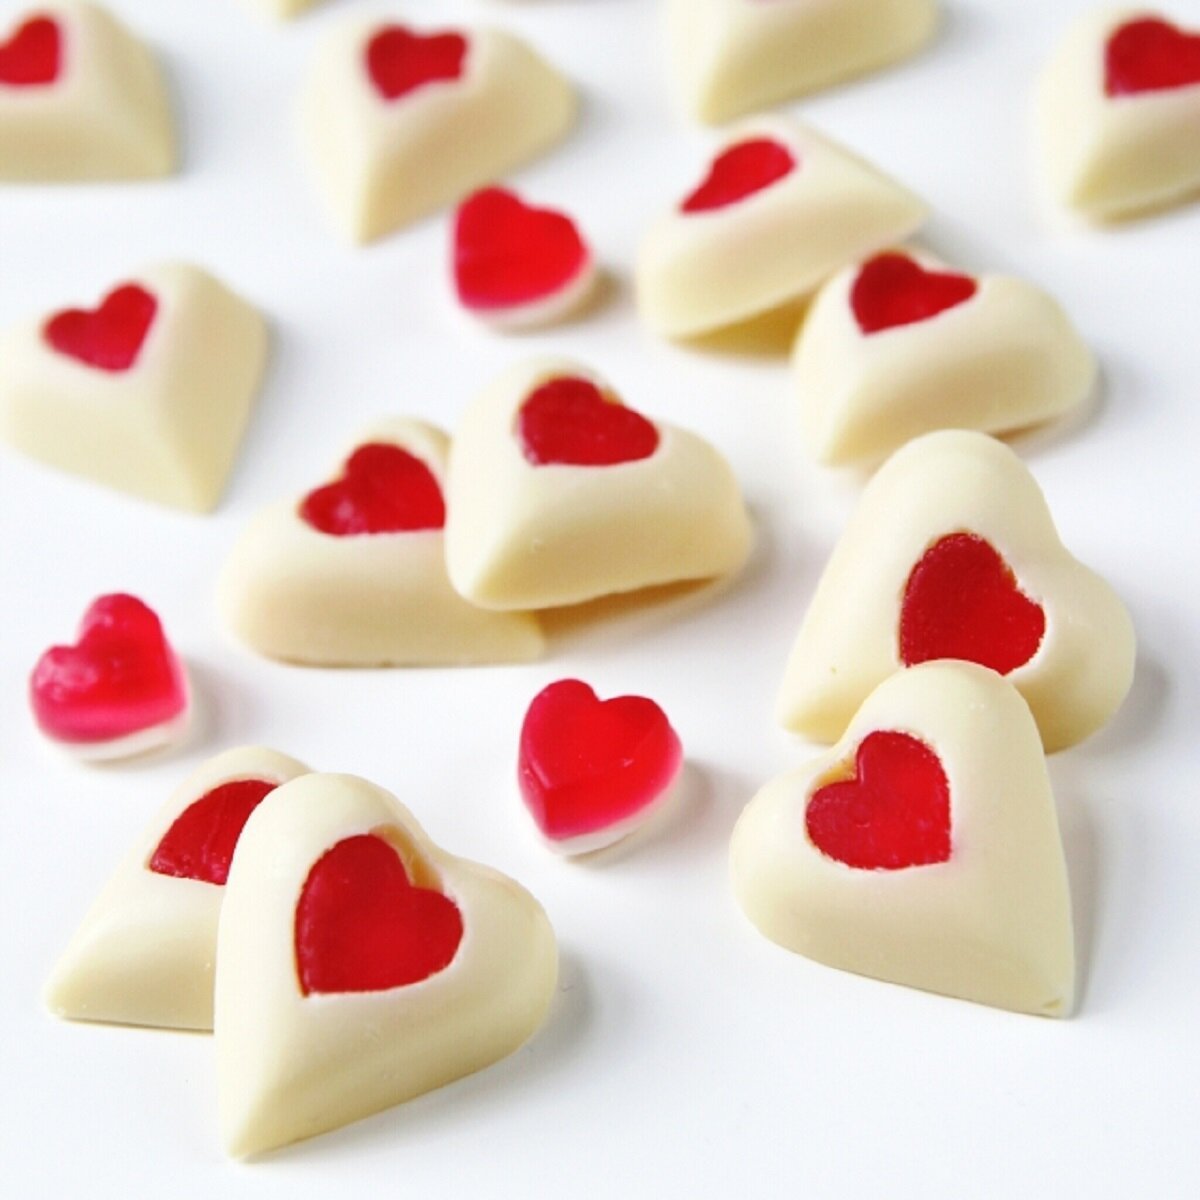 Chocolate trắng là món quà tượng trưng cho ngày Valentine trắng 14/3. (Ảnh: Gatheringbeauty)